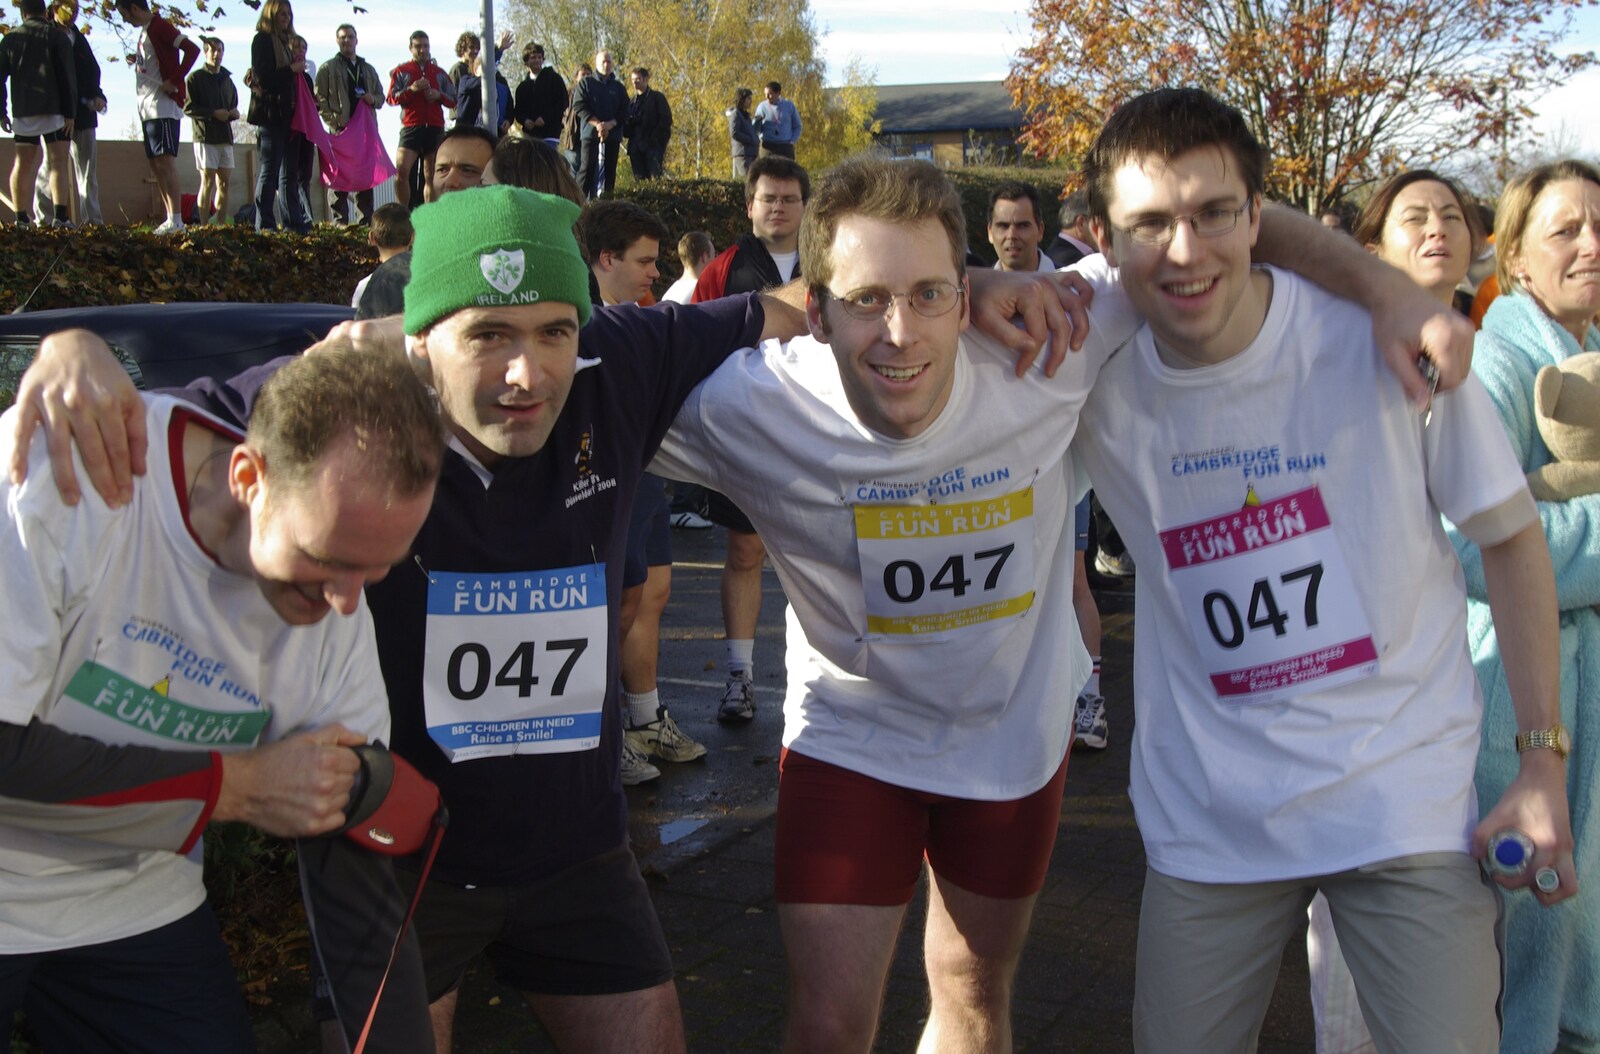 The Cambridge Fun Run, Milton Road, Cambridge - 14th November 2008: Jake, Connor, Brett and Kristian